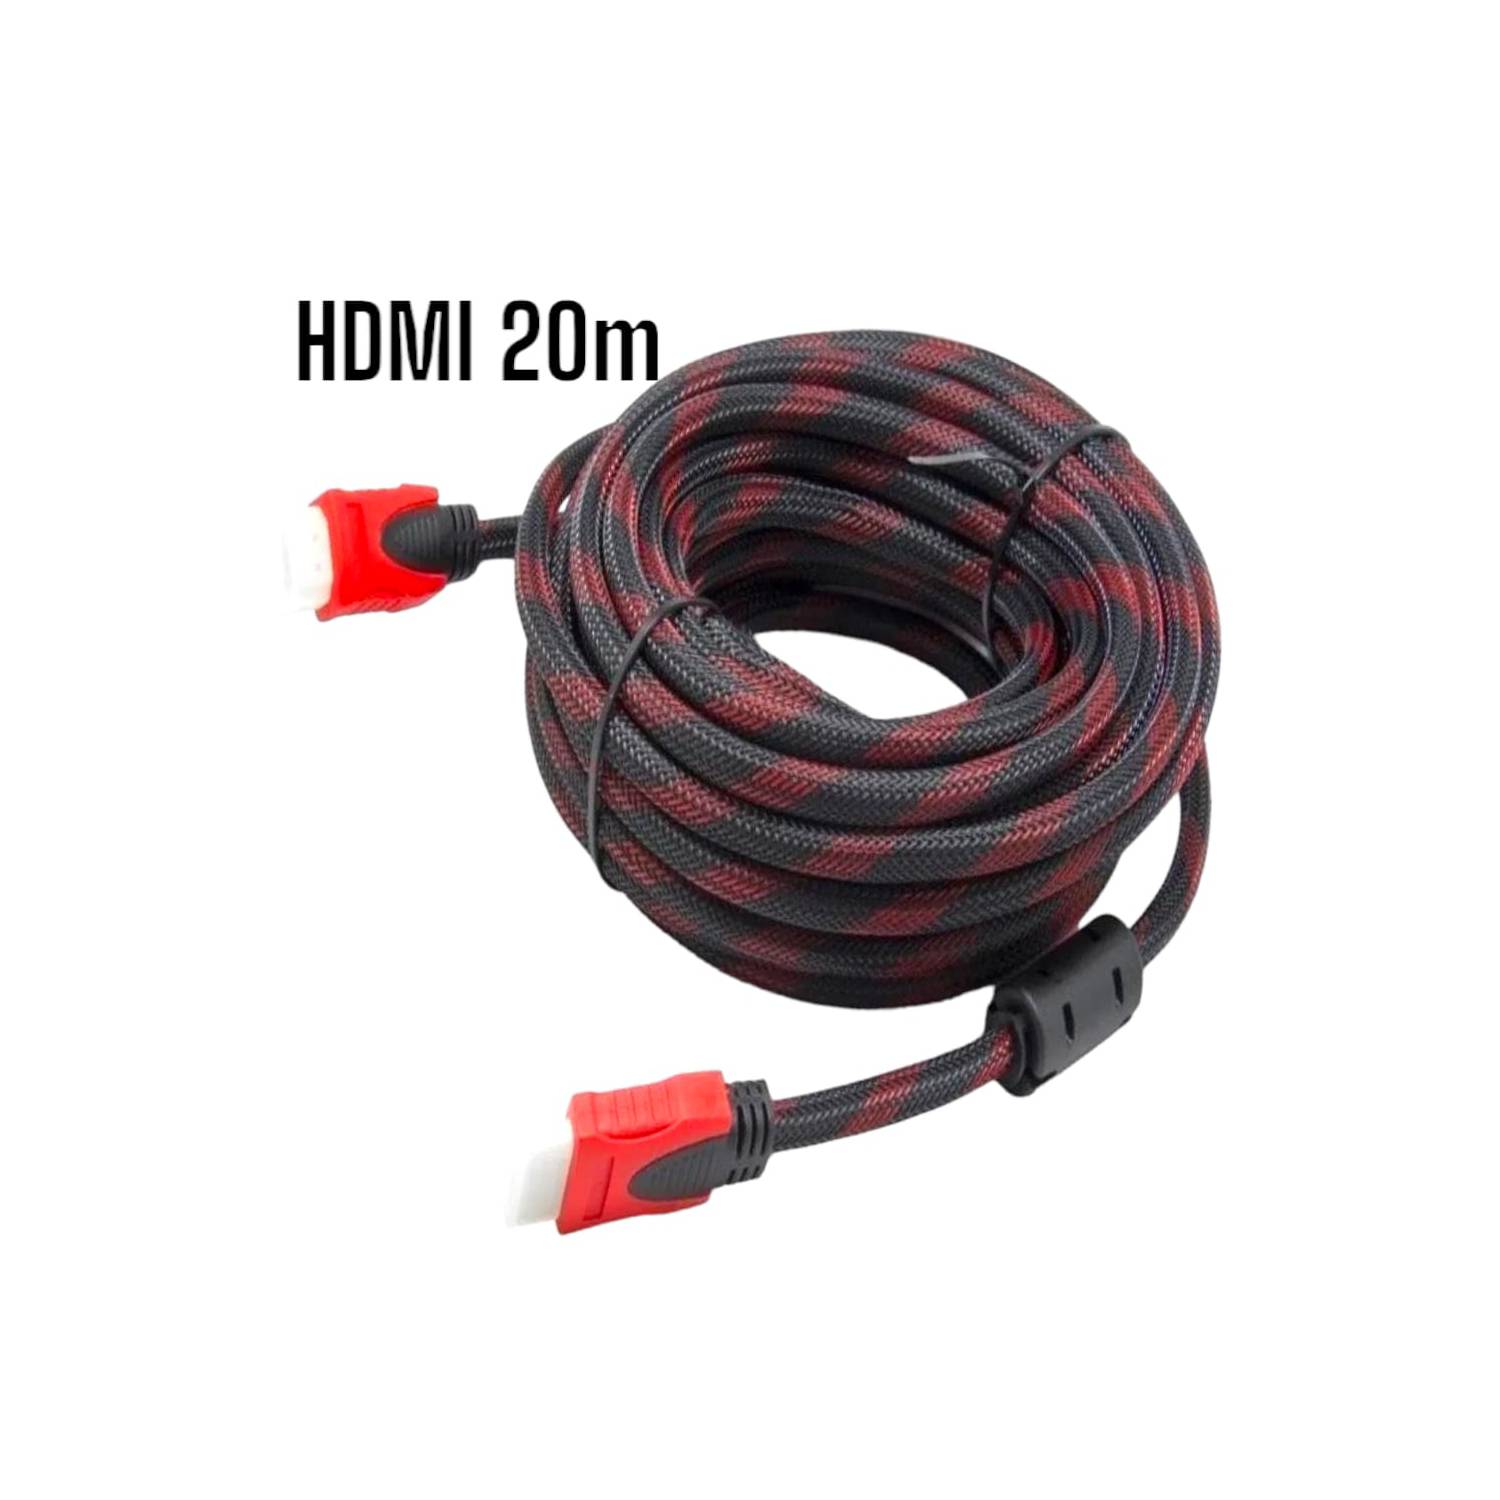 Cable HDMI con Filtro 1.5 Metros HD 3D V1.4 Enmallado Negro con Rojo